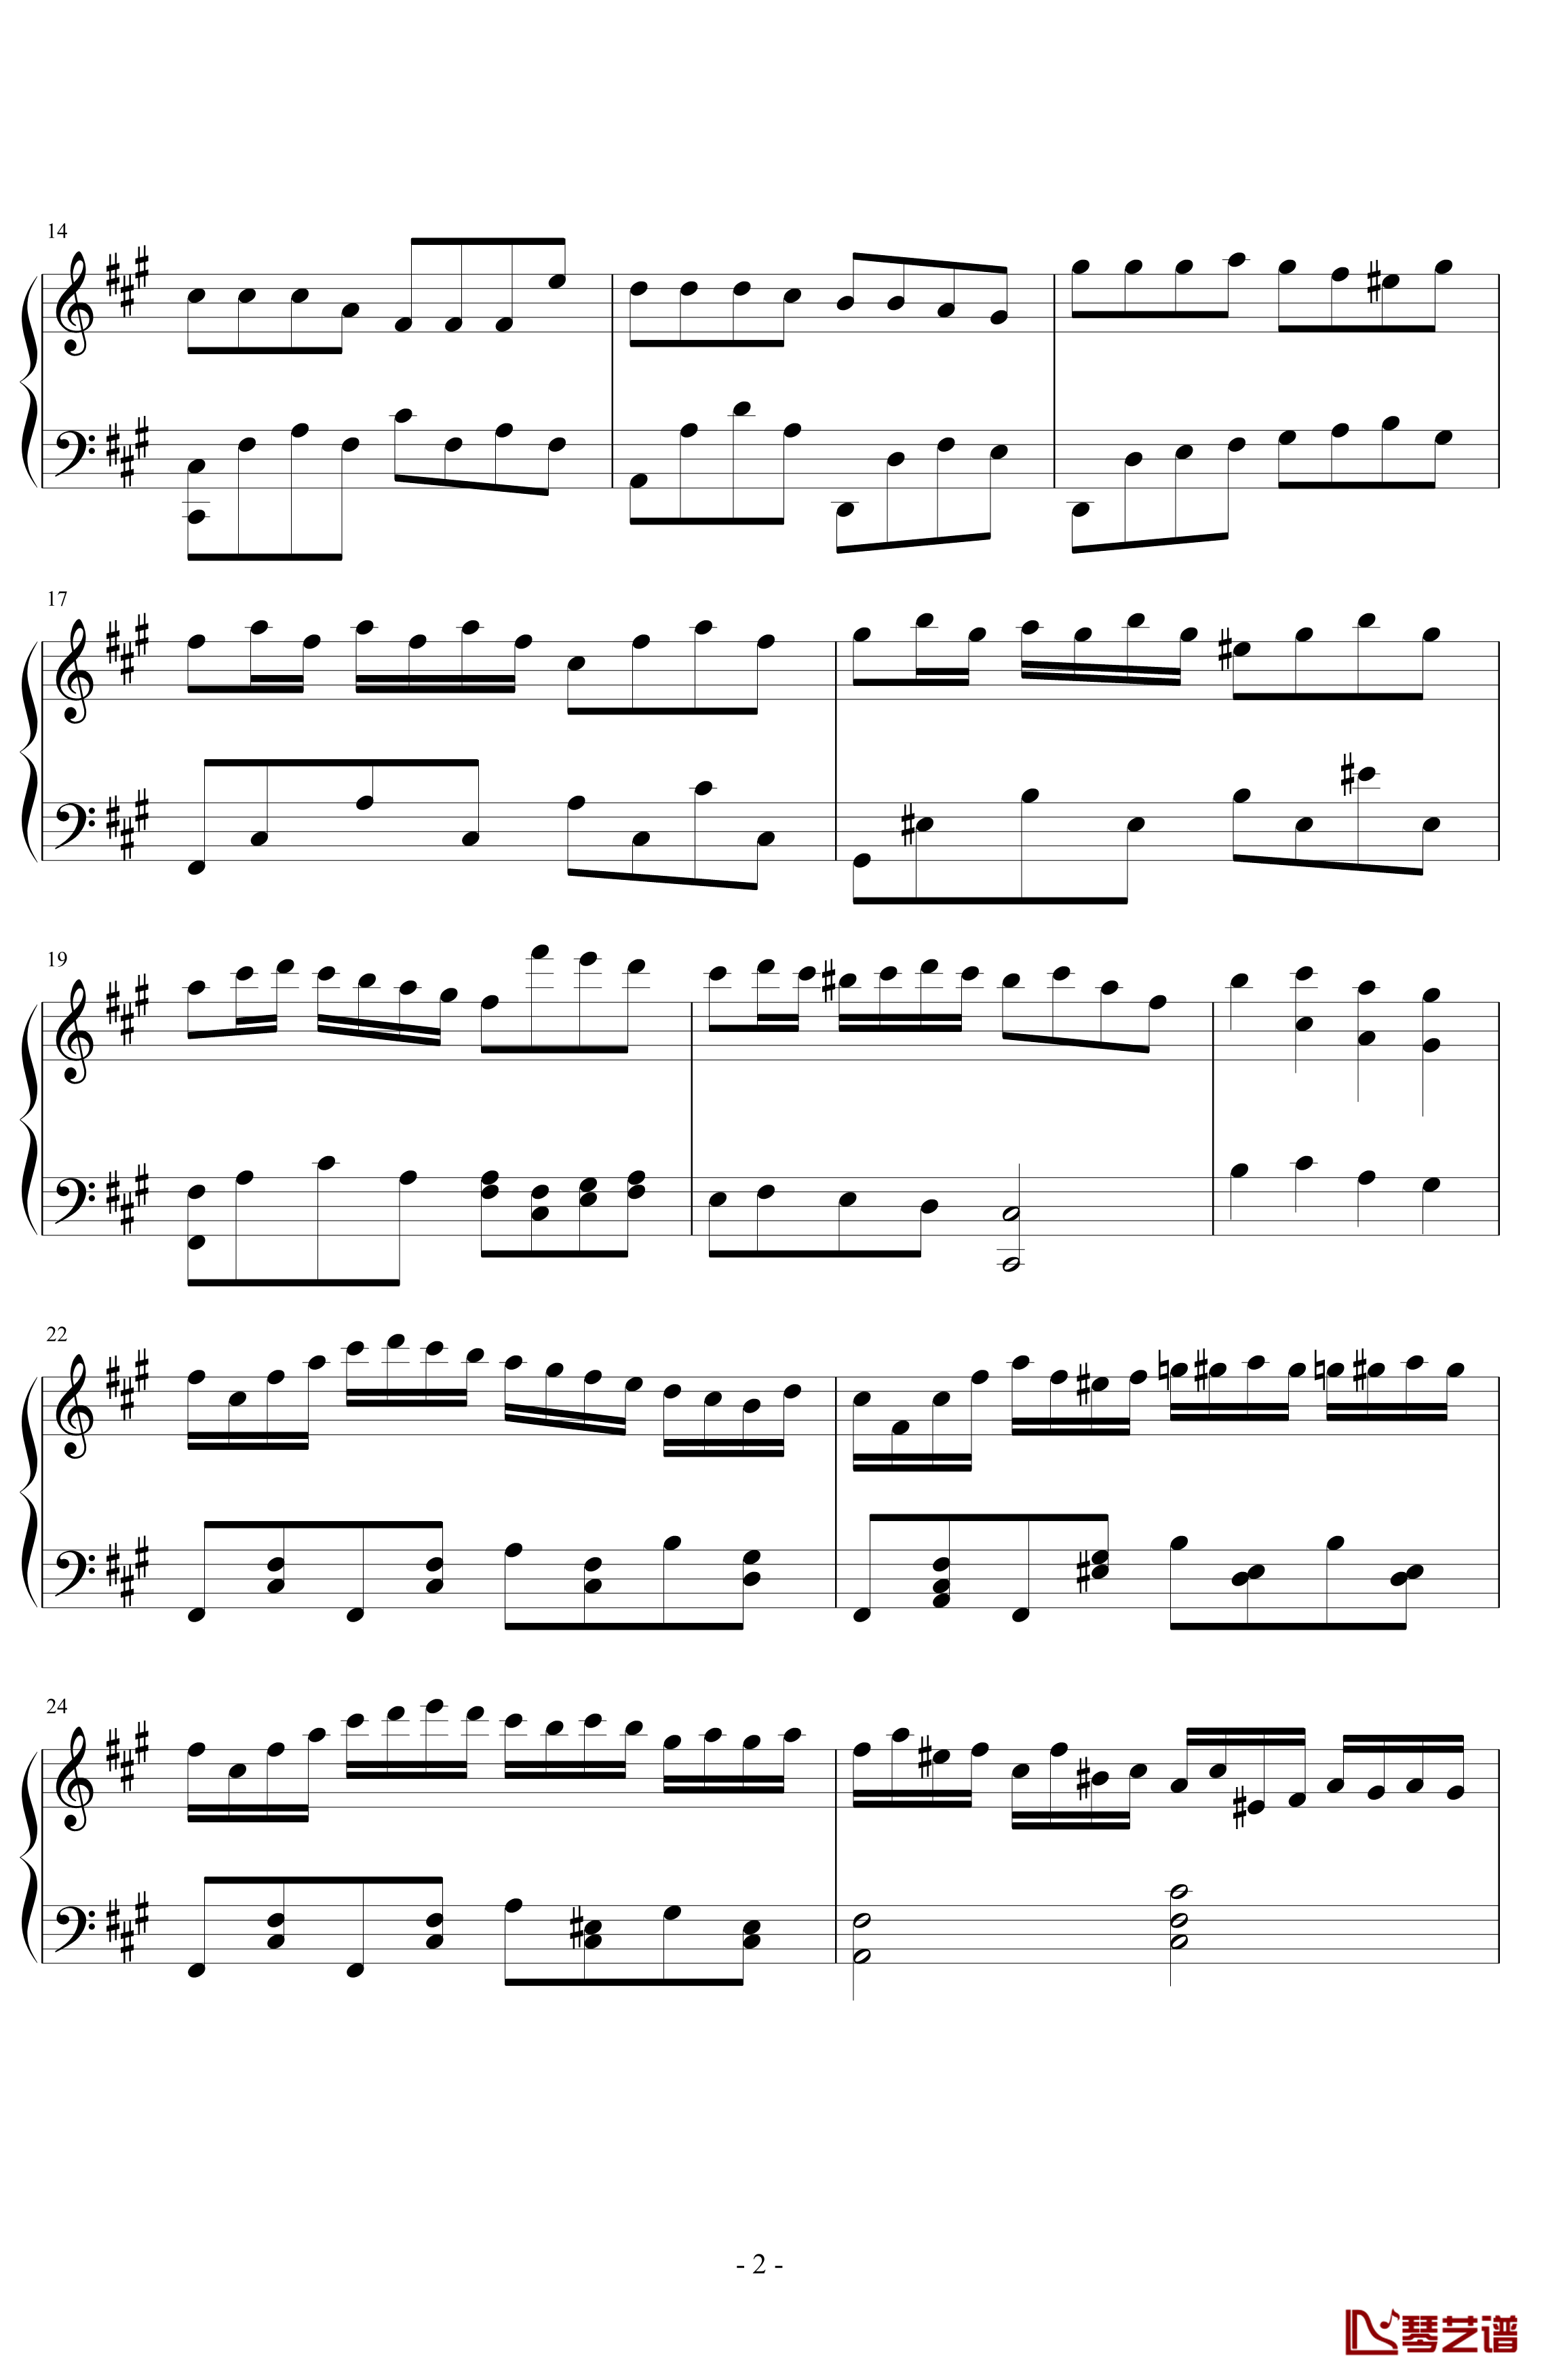 无题钢琴谱-PARROT1862